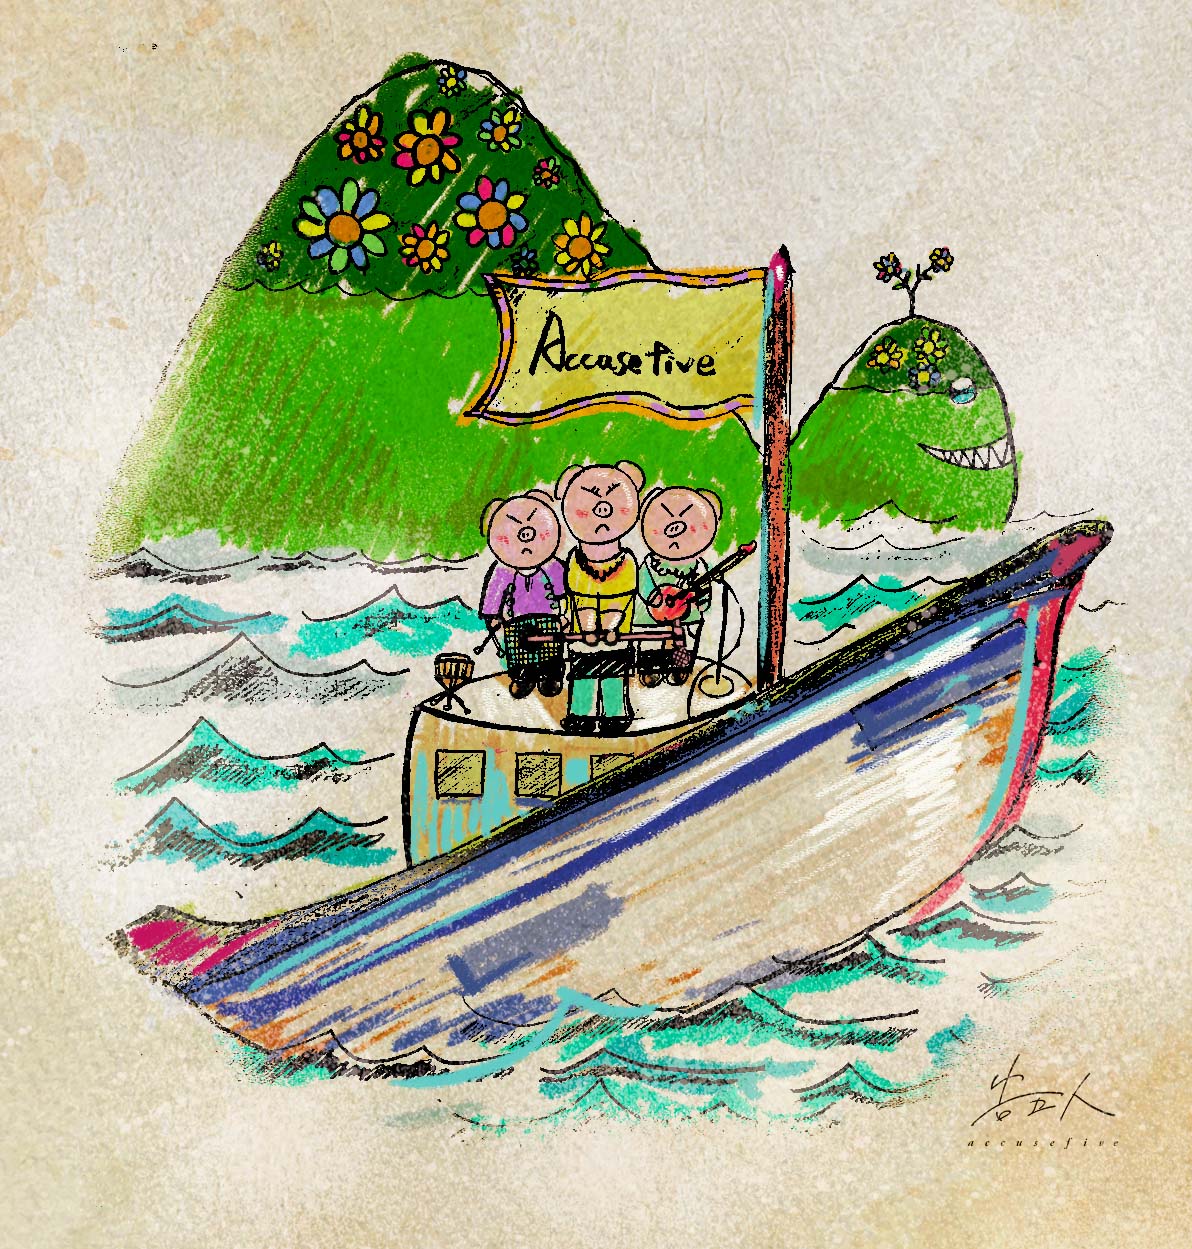 告五人吉祥物告五豬遊龜山島，邀世界各地哈瓜「宜」起回家踩點。圖/相信音樂提供